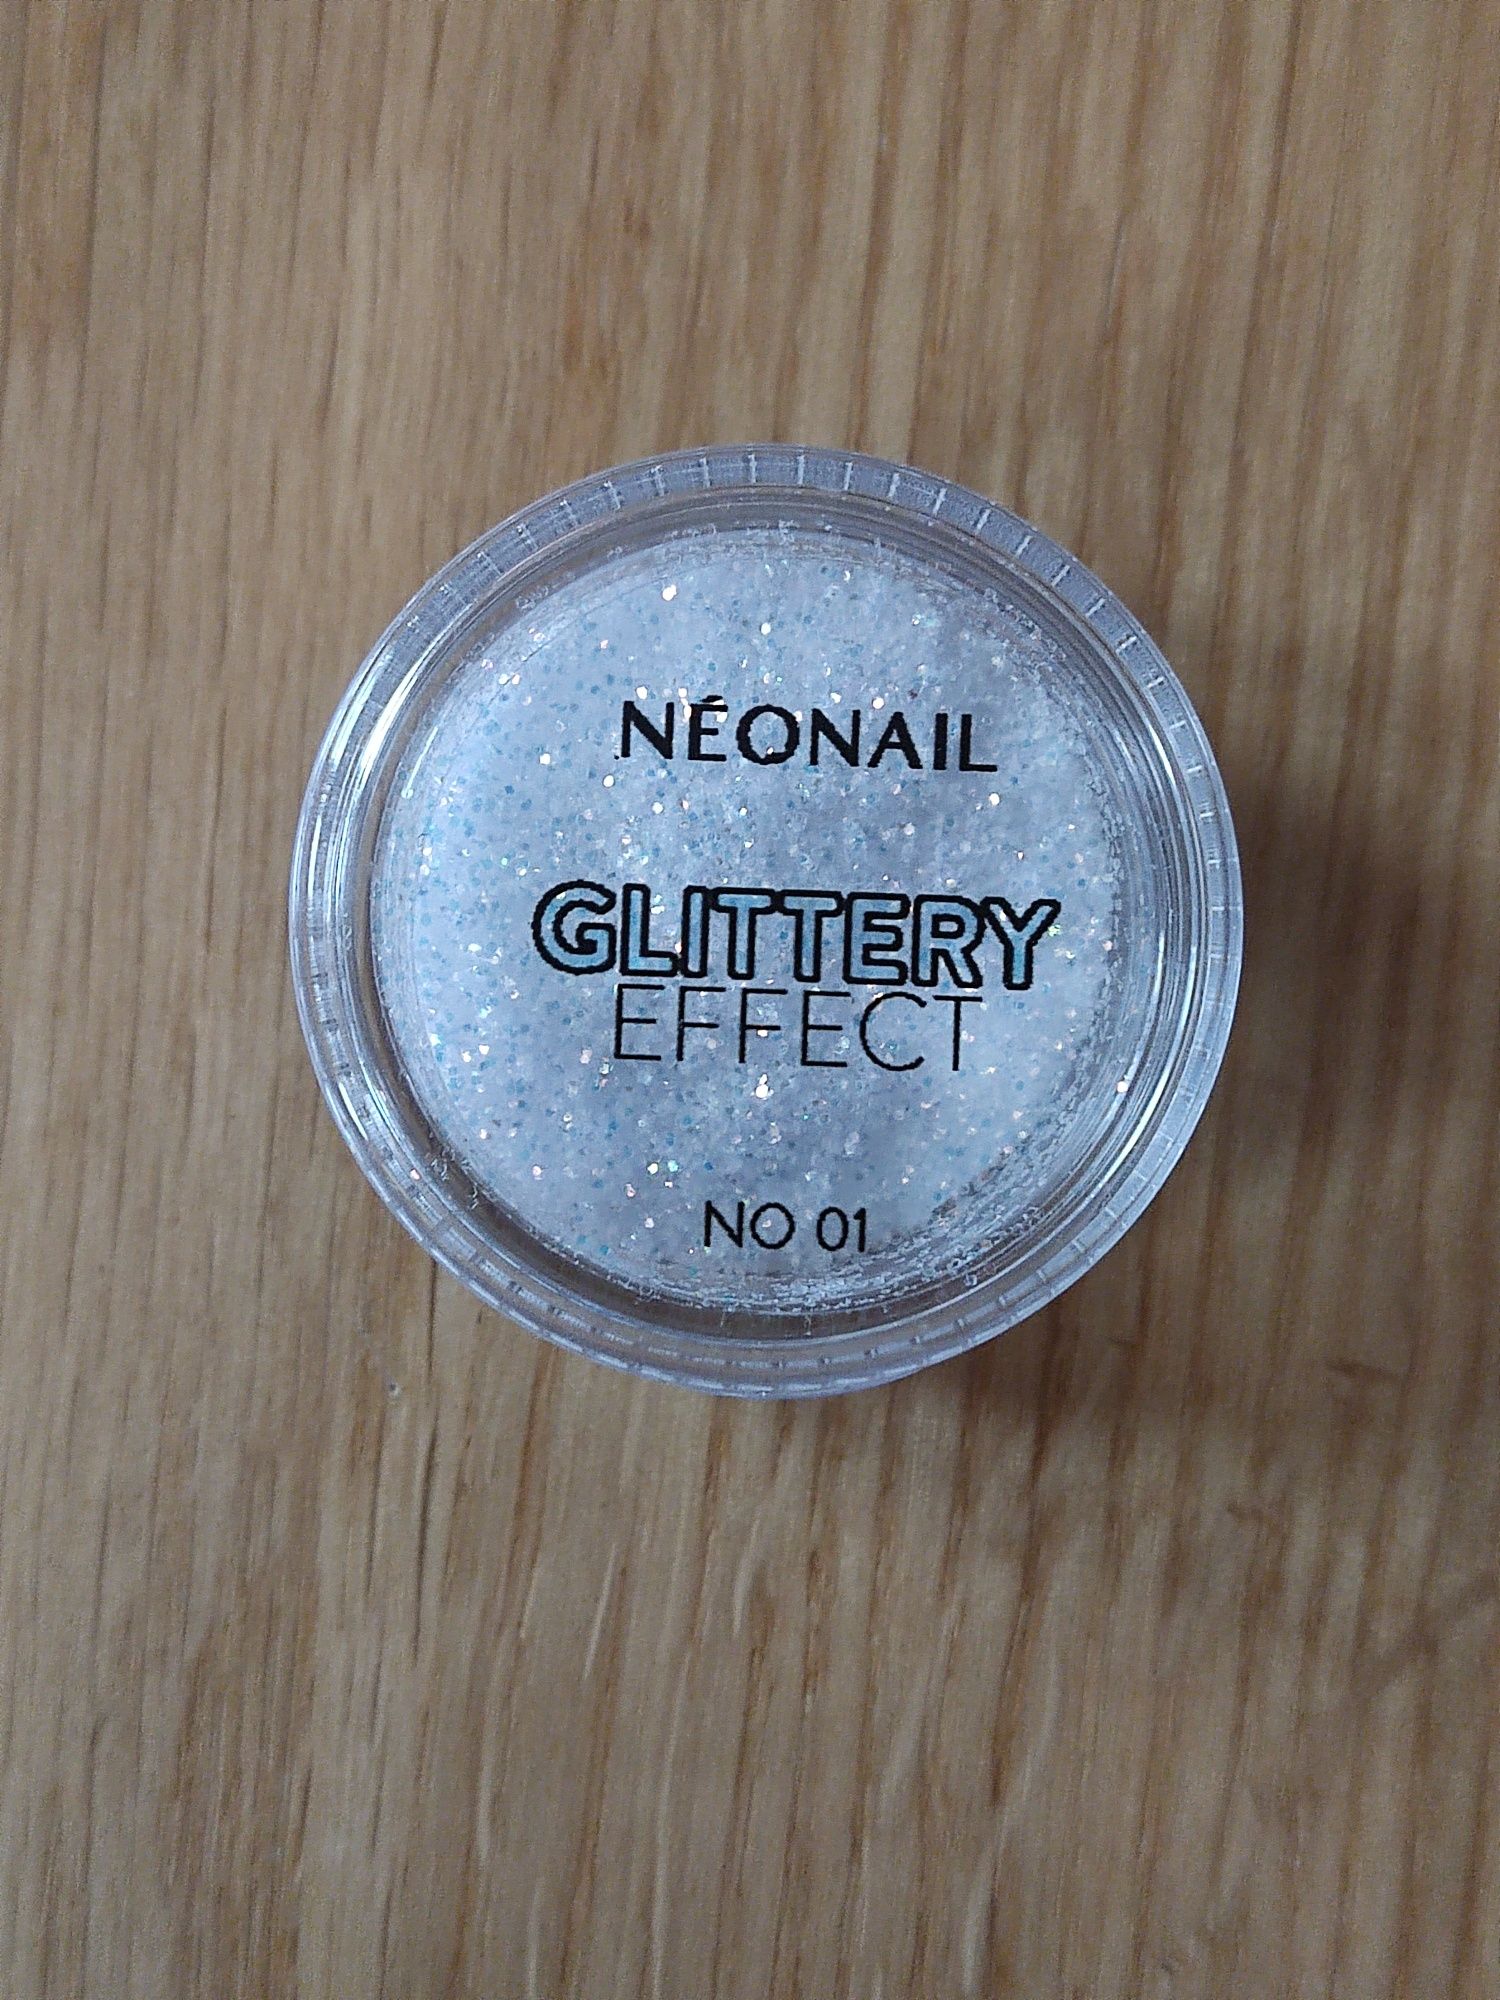 Nowy pyłek do paznokci neonail glittery effect 01 manicure